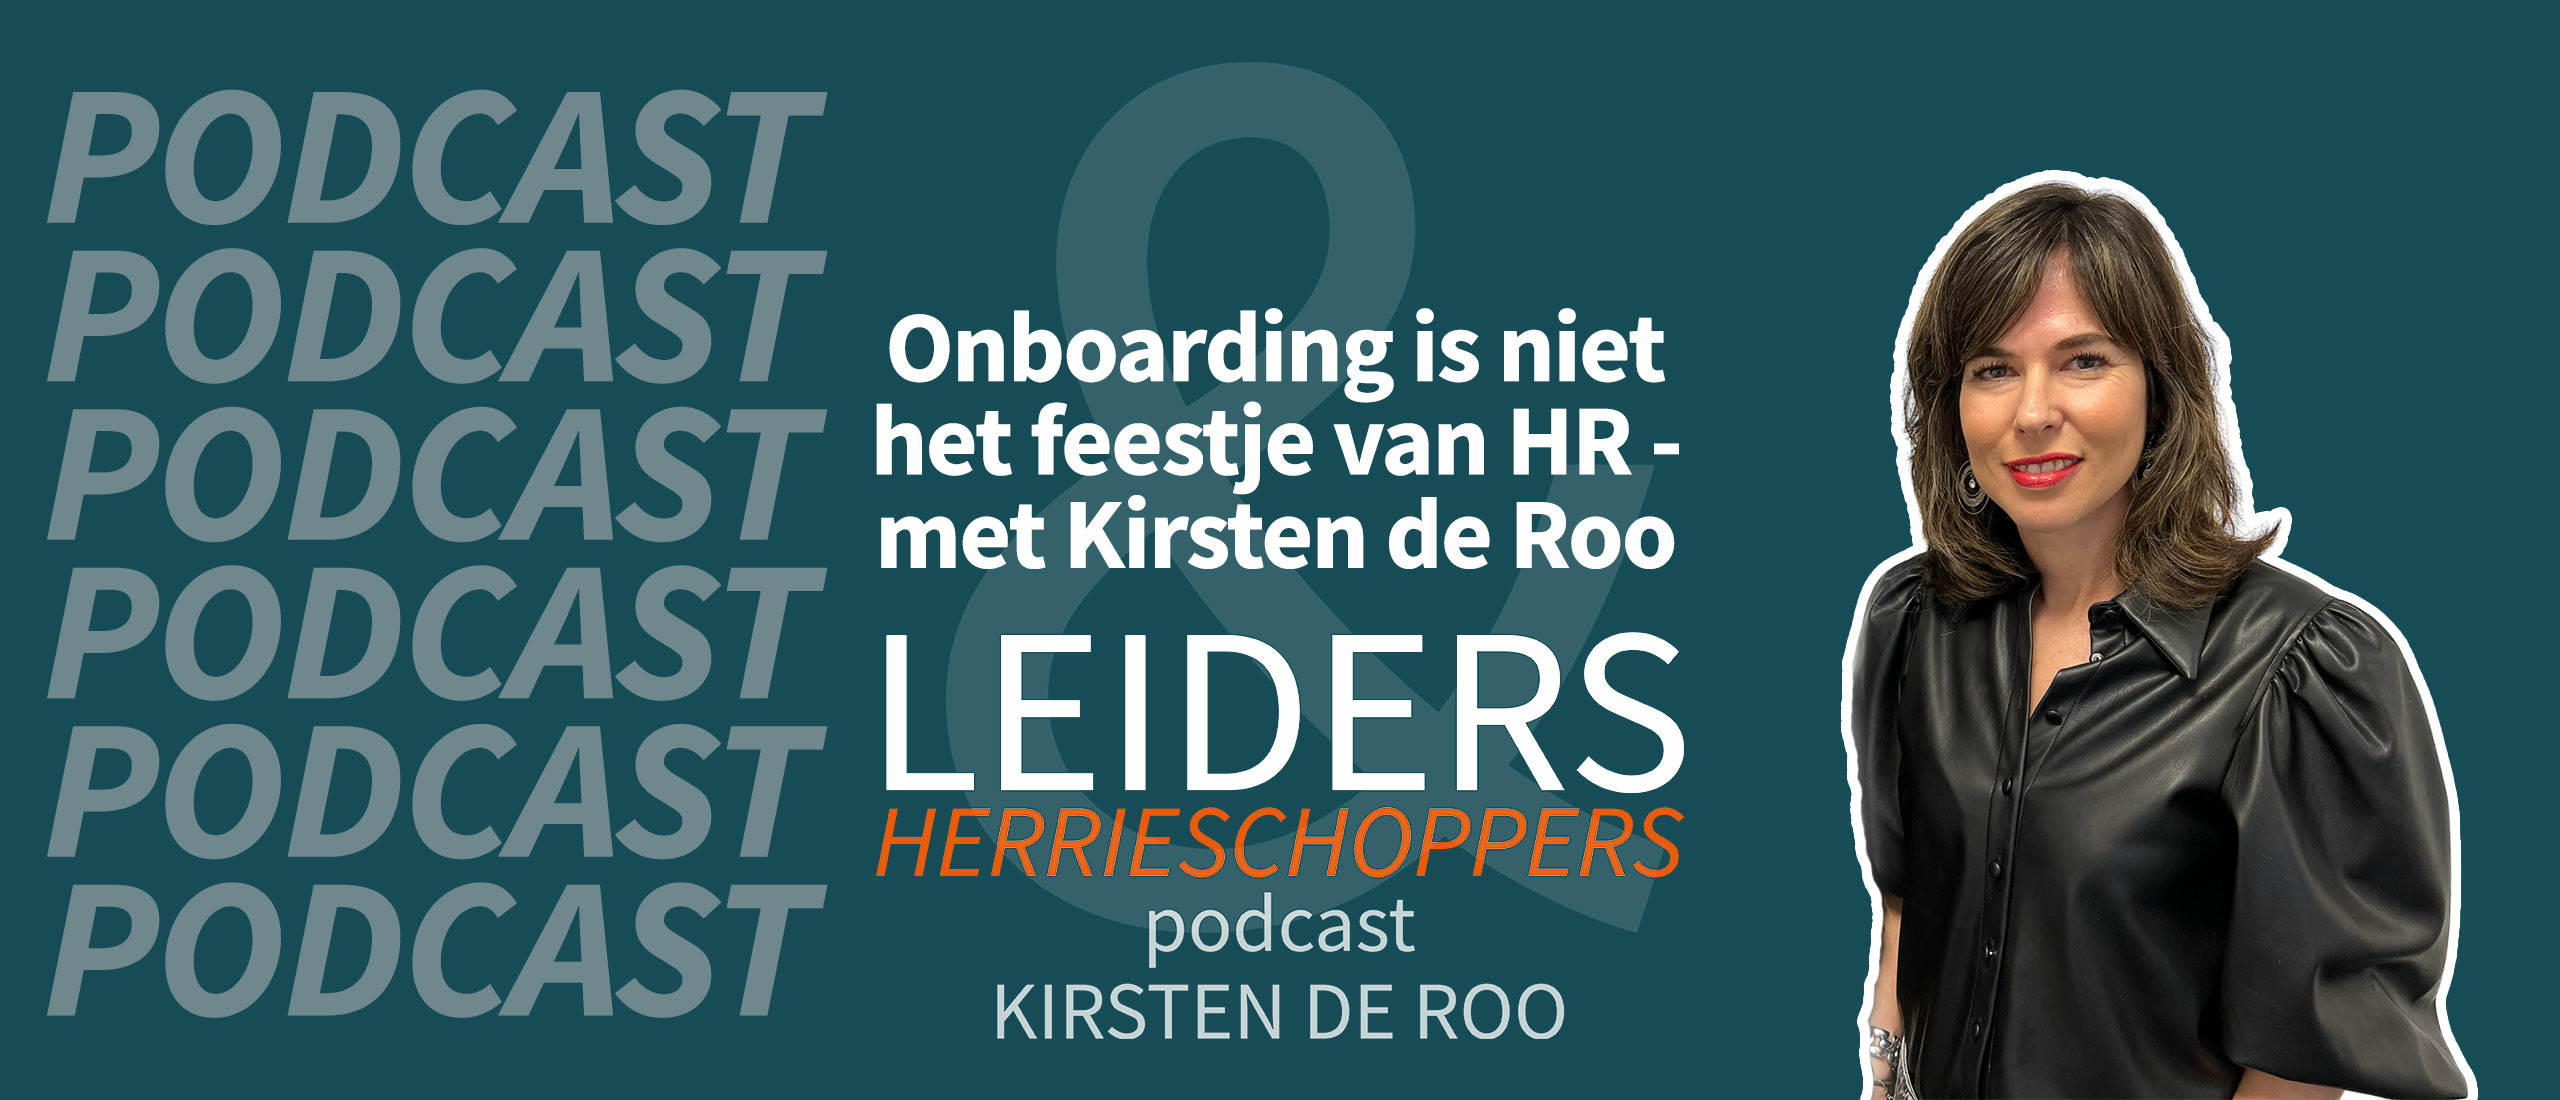 Onboarding is niet het feestje van HR - met Kirsten de Roo #10